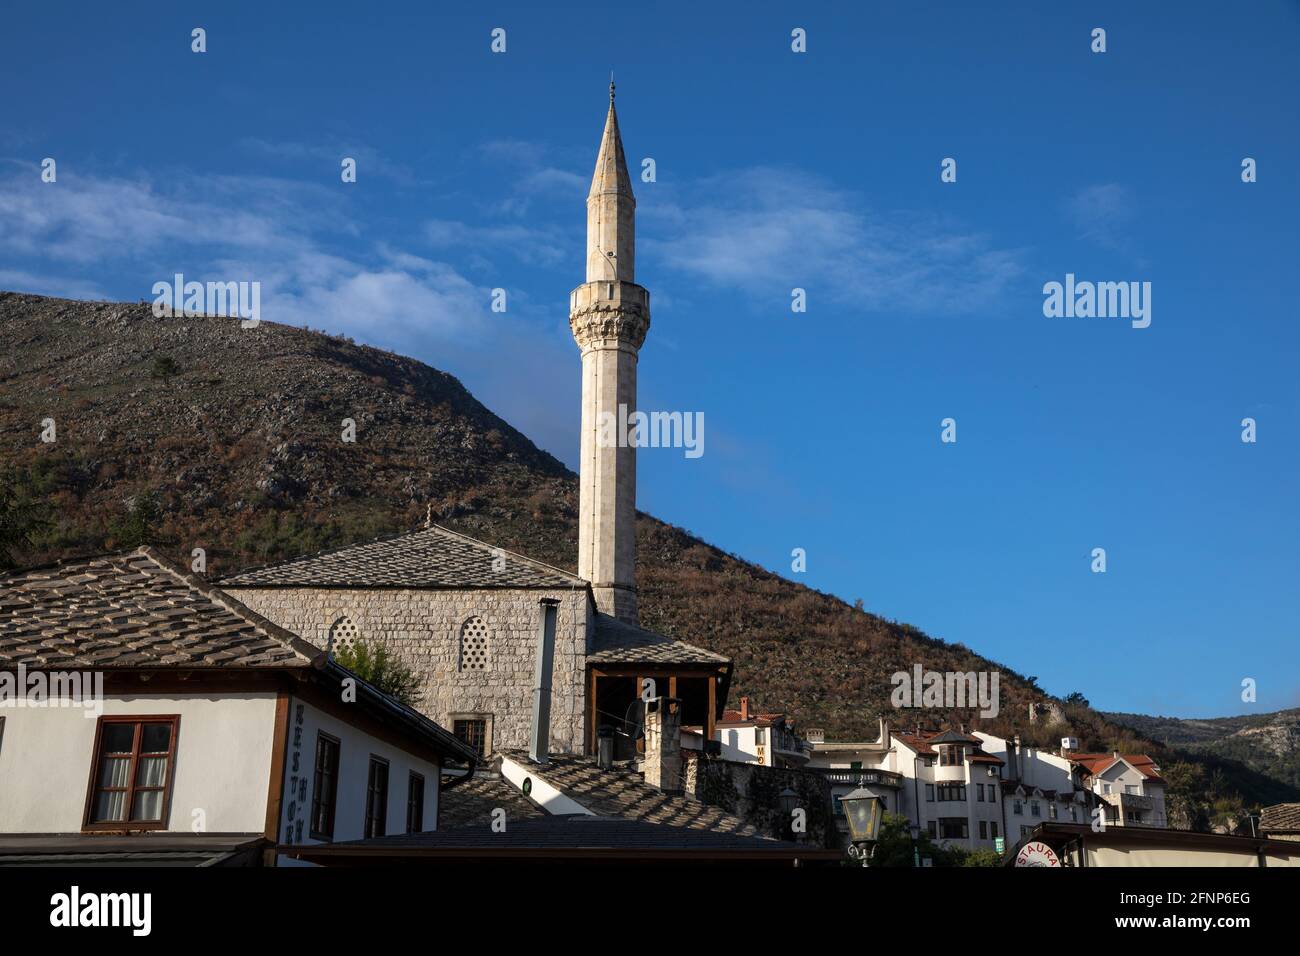 Buildings and minaret in Mostar, Herzegovina, Bosnia & Herzegovina. Stock Photo